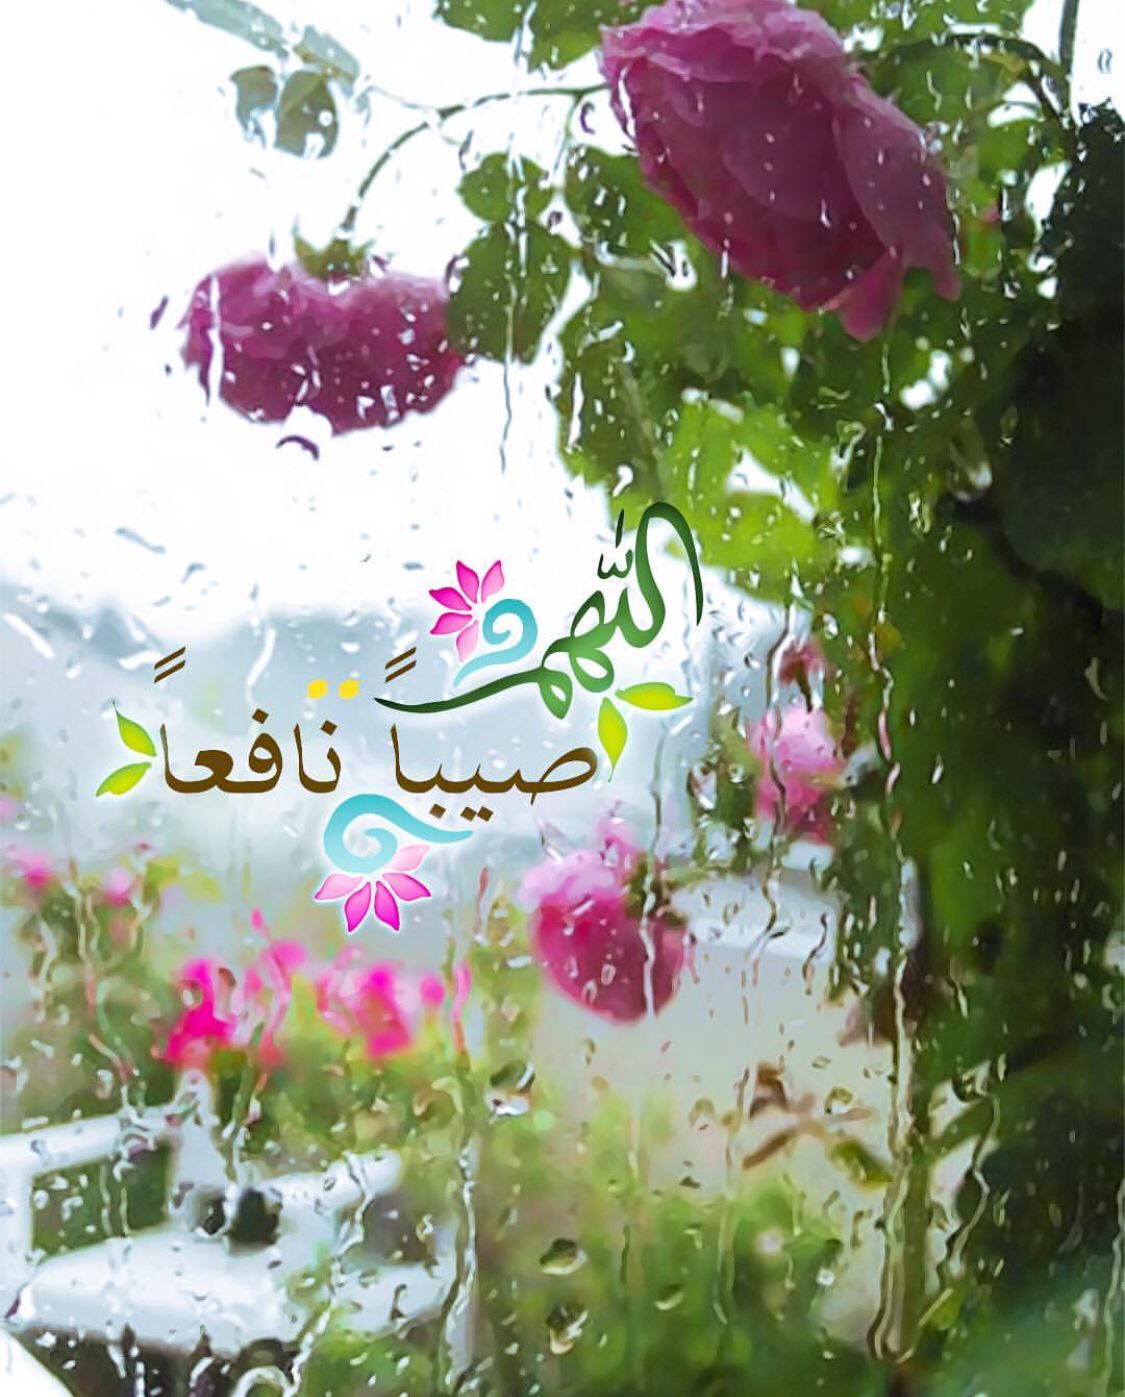 دعاء المطر اللهم صيبا نافعا - مجلة رجيم